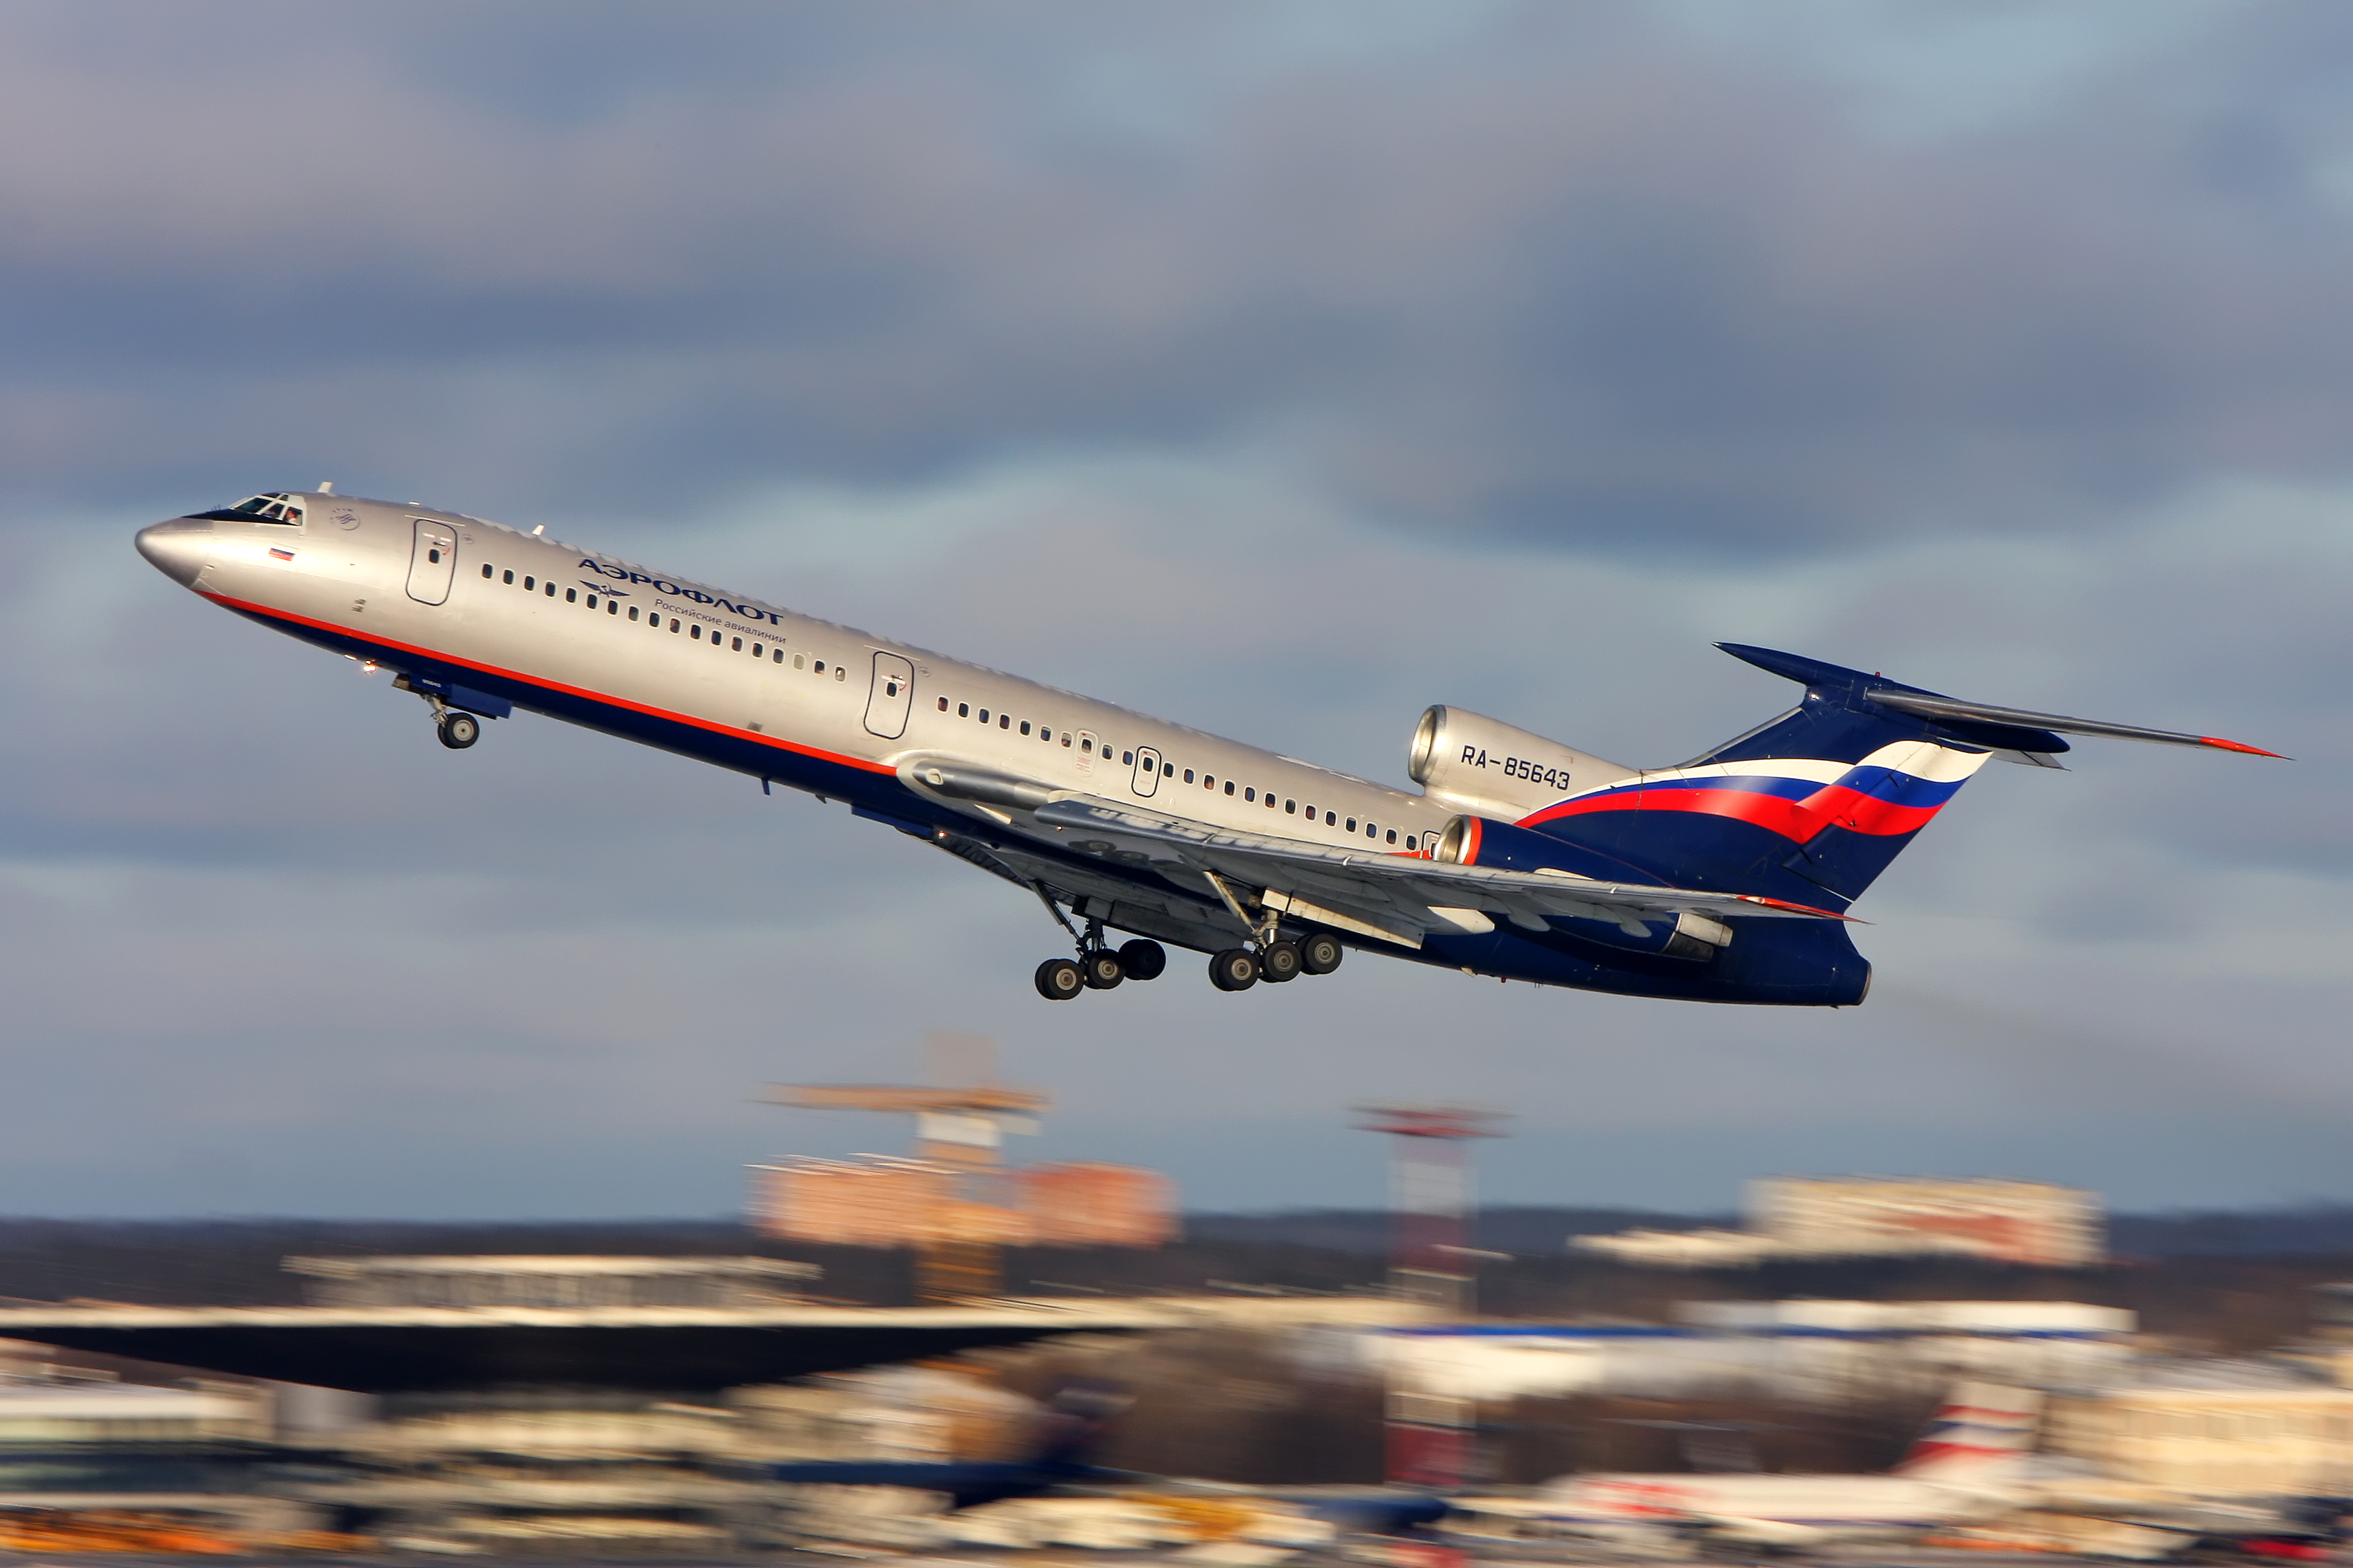 Tupolev Tu-154 #03